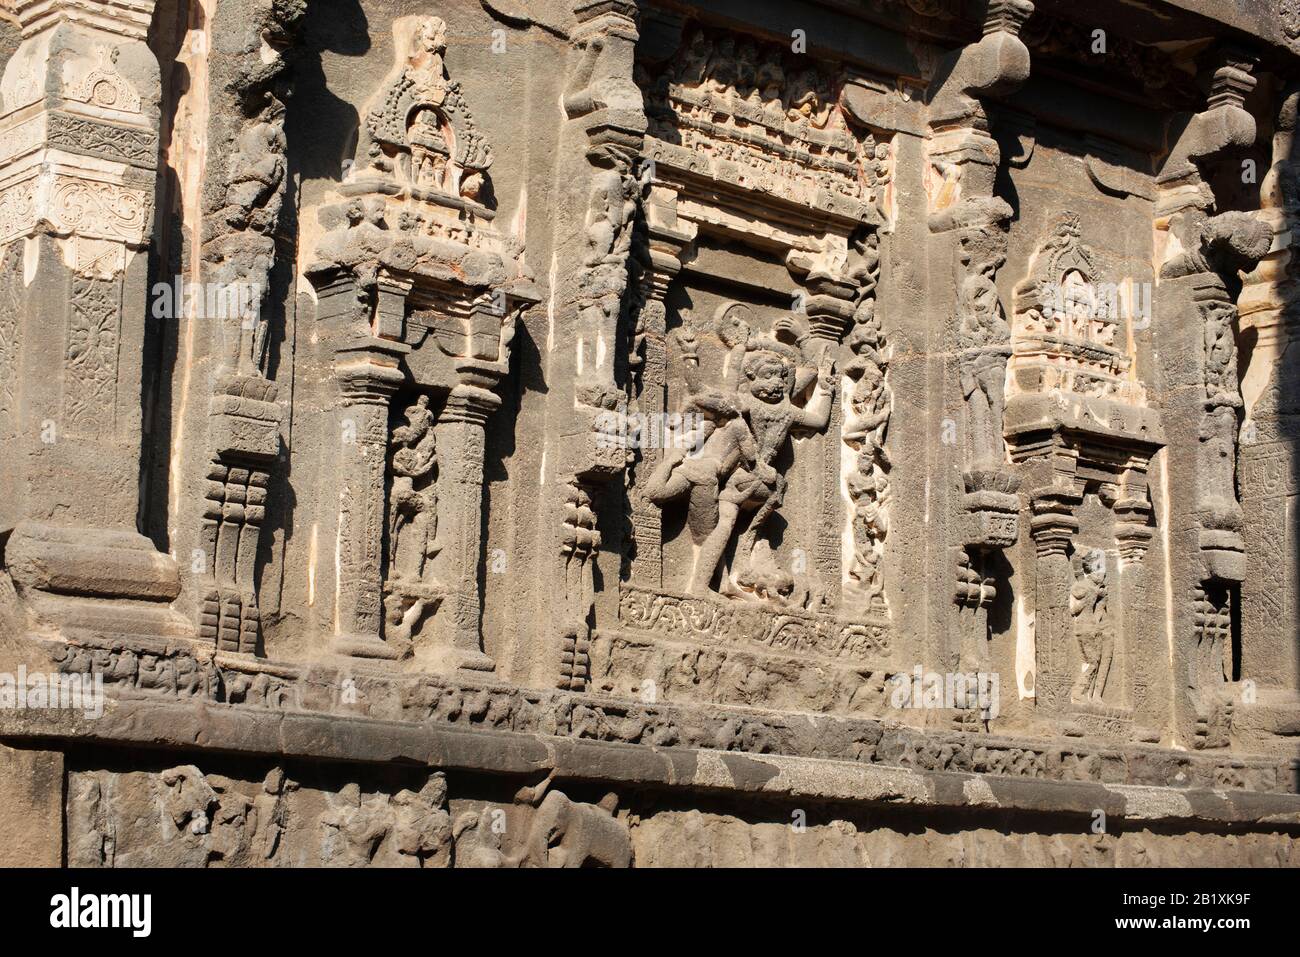 Grottes d'Ellora, Aurangabad, Maharashtra, Inde temple de caverne de roche no 16 (Kailasa) côté sud, montrant Ugra Narasimha et Hiranyakashpa. Banque D'Images